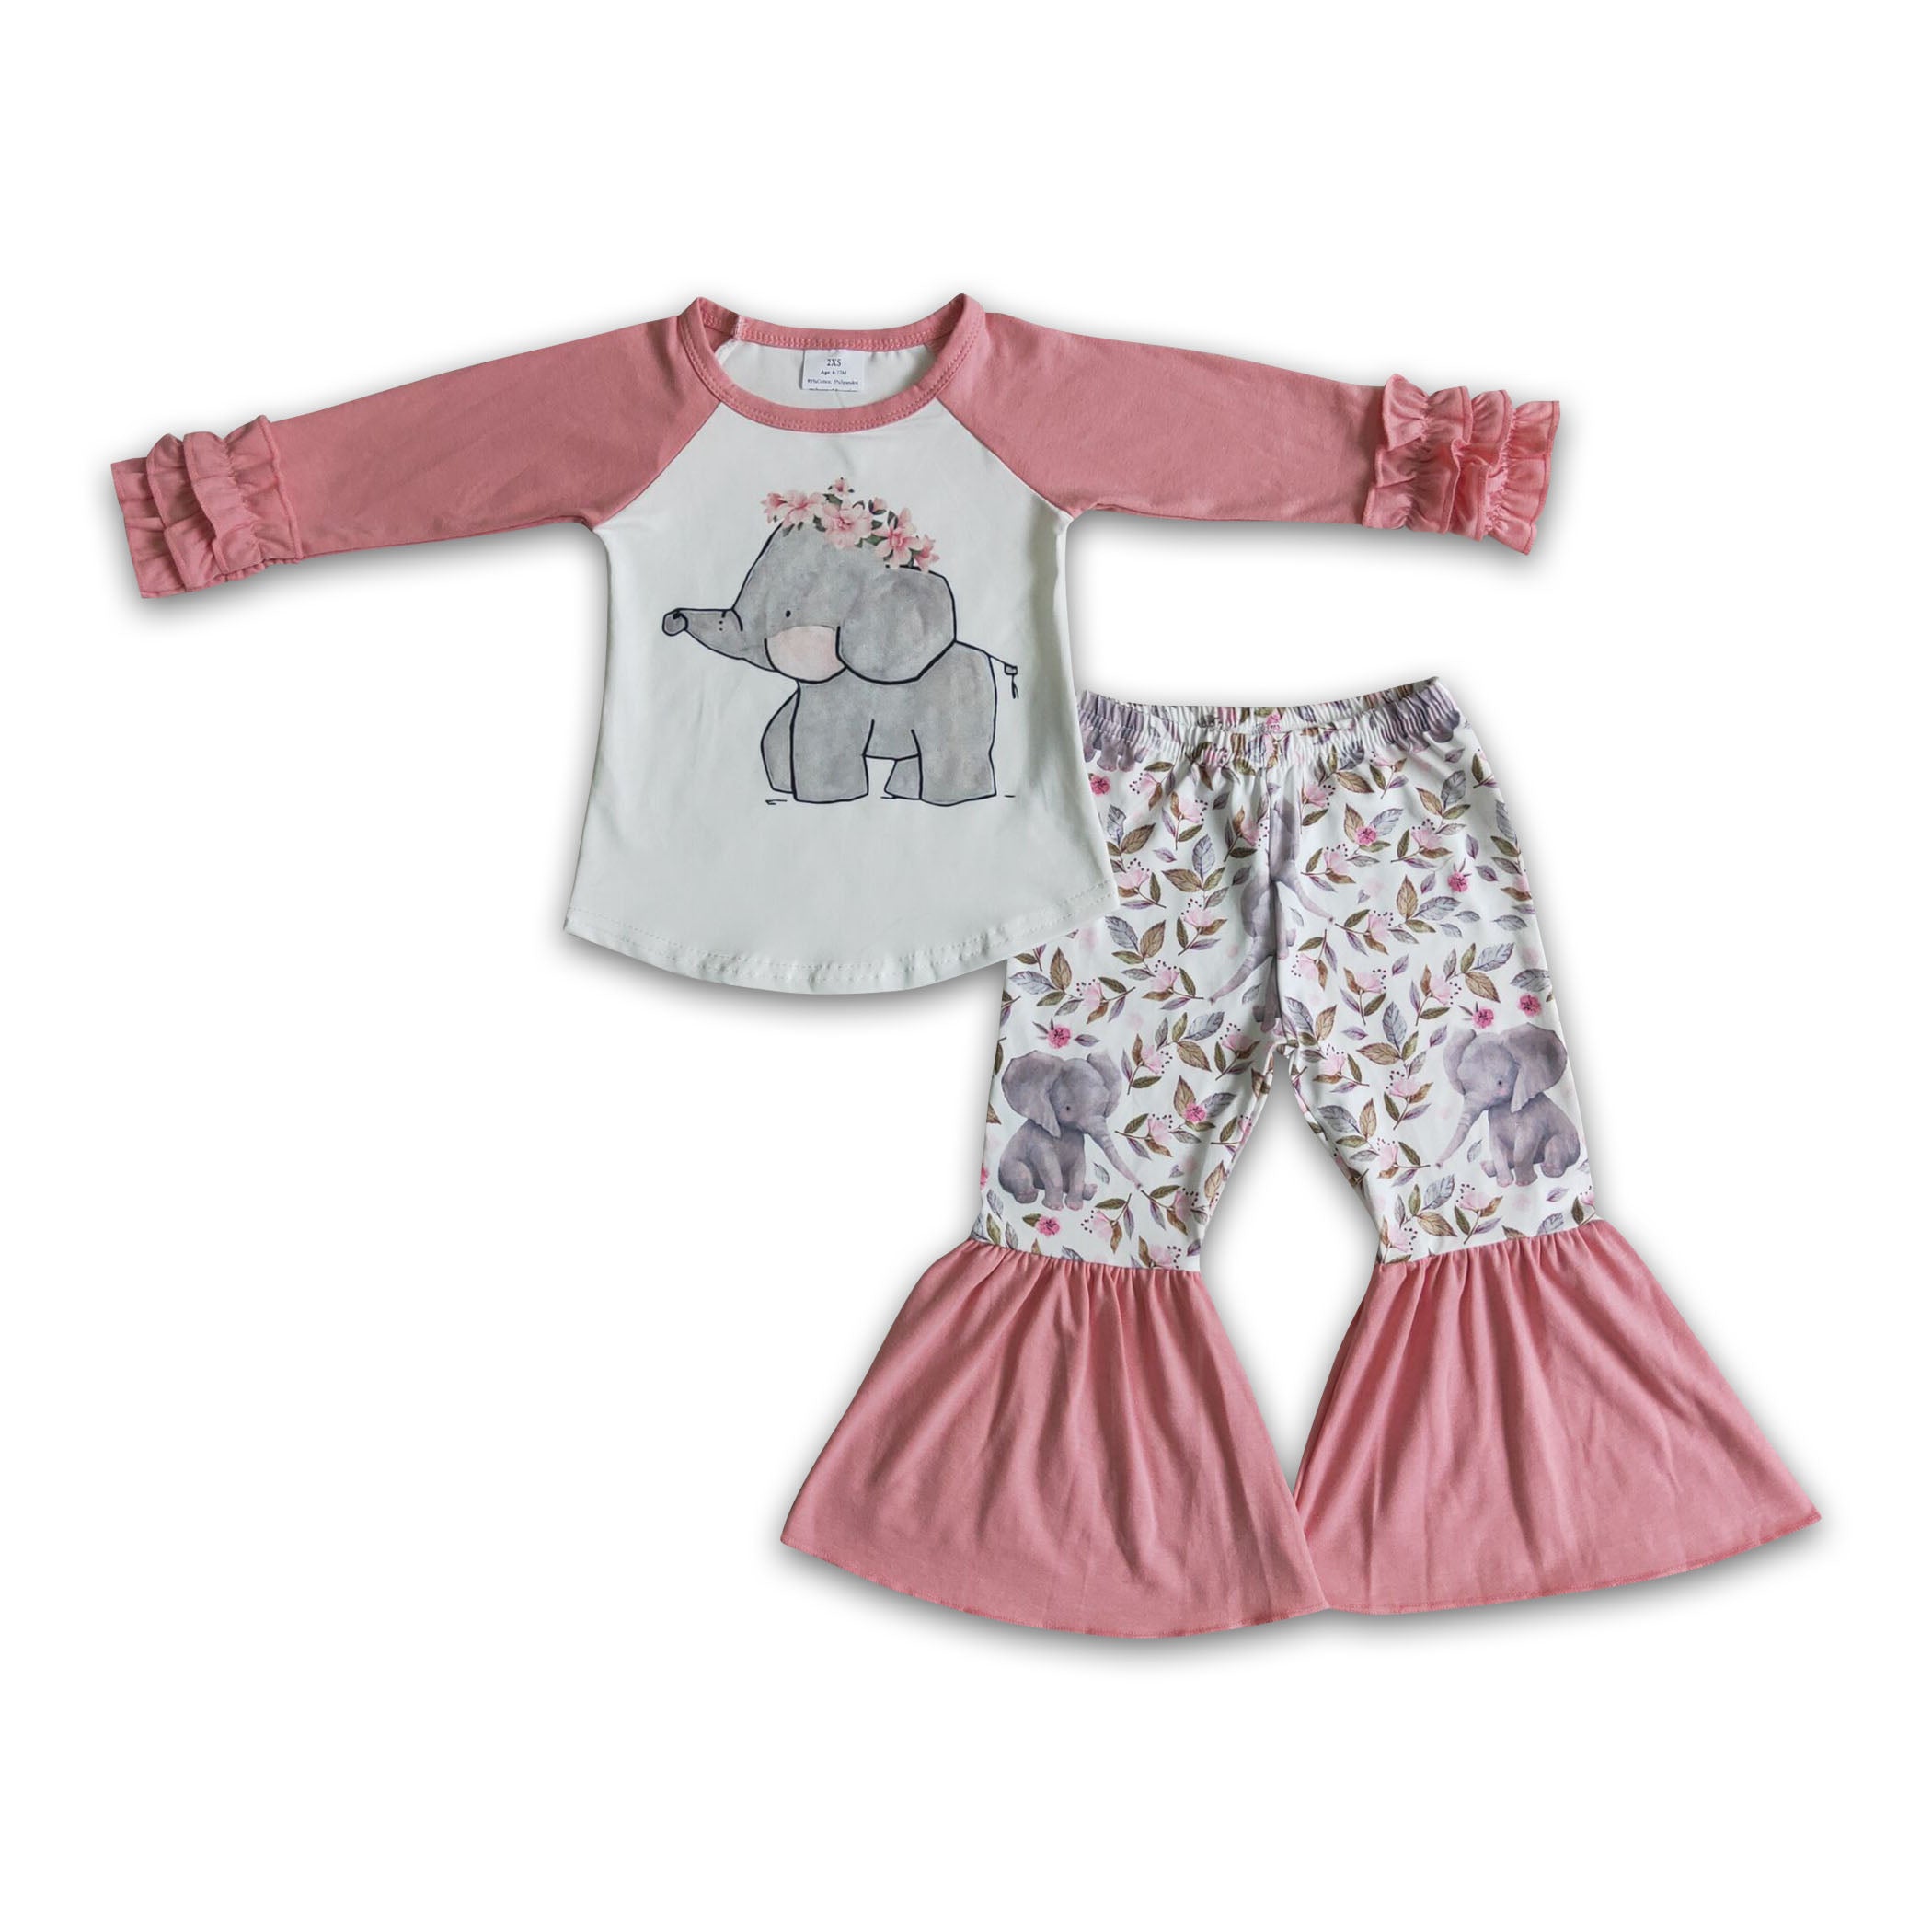 Deer floral tunic hot pink LEGGINGS girls clothing set